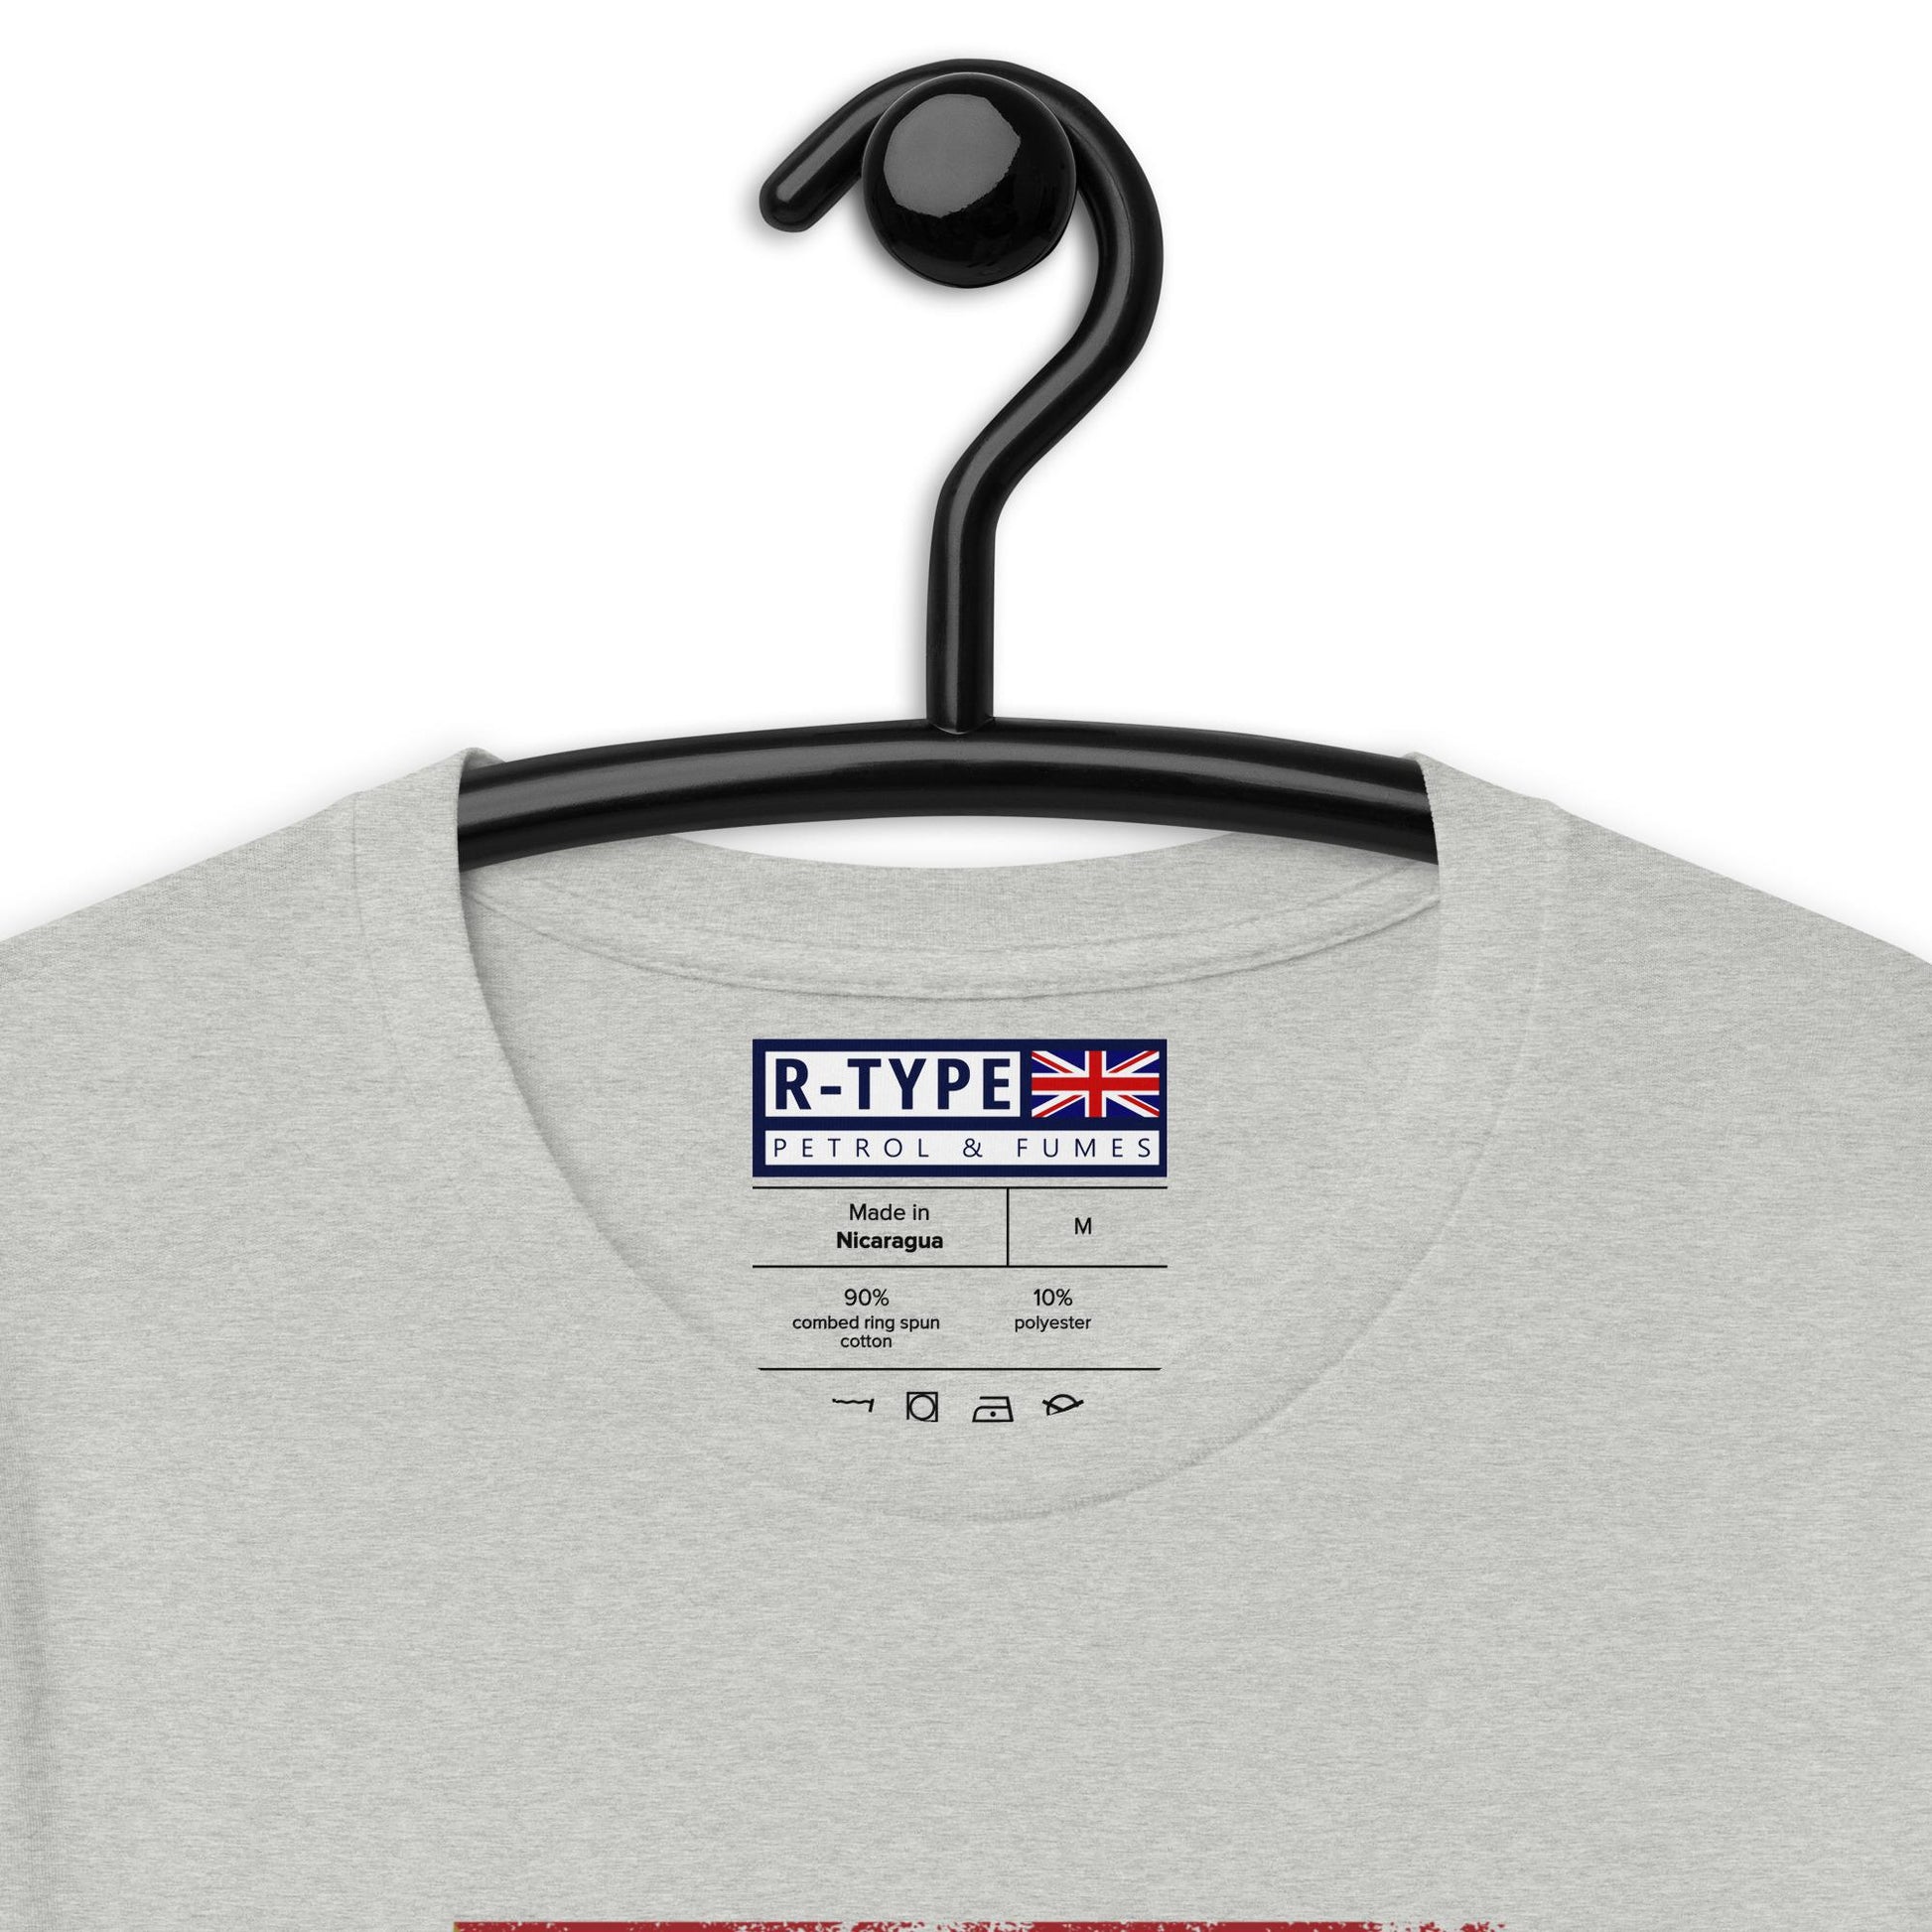 Classic Targa Florio Poster Racing T-shirt Sportscar – Apparel R-Type